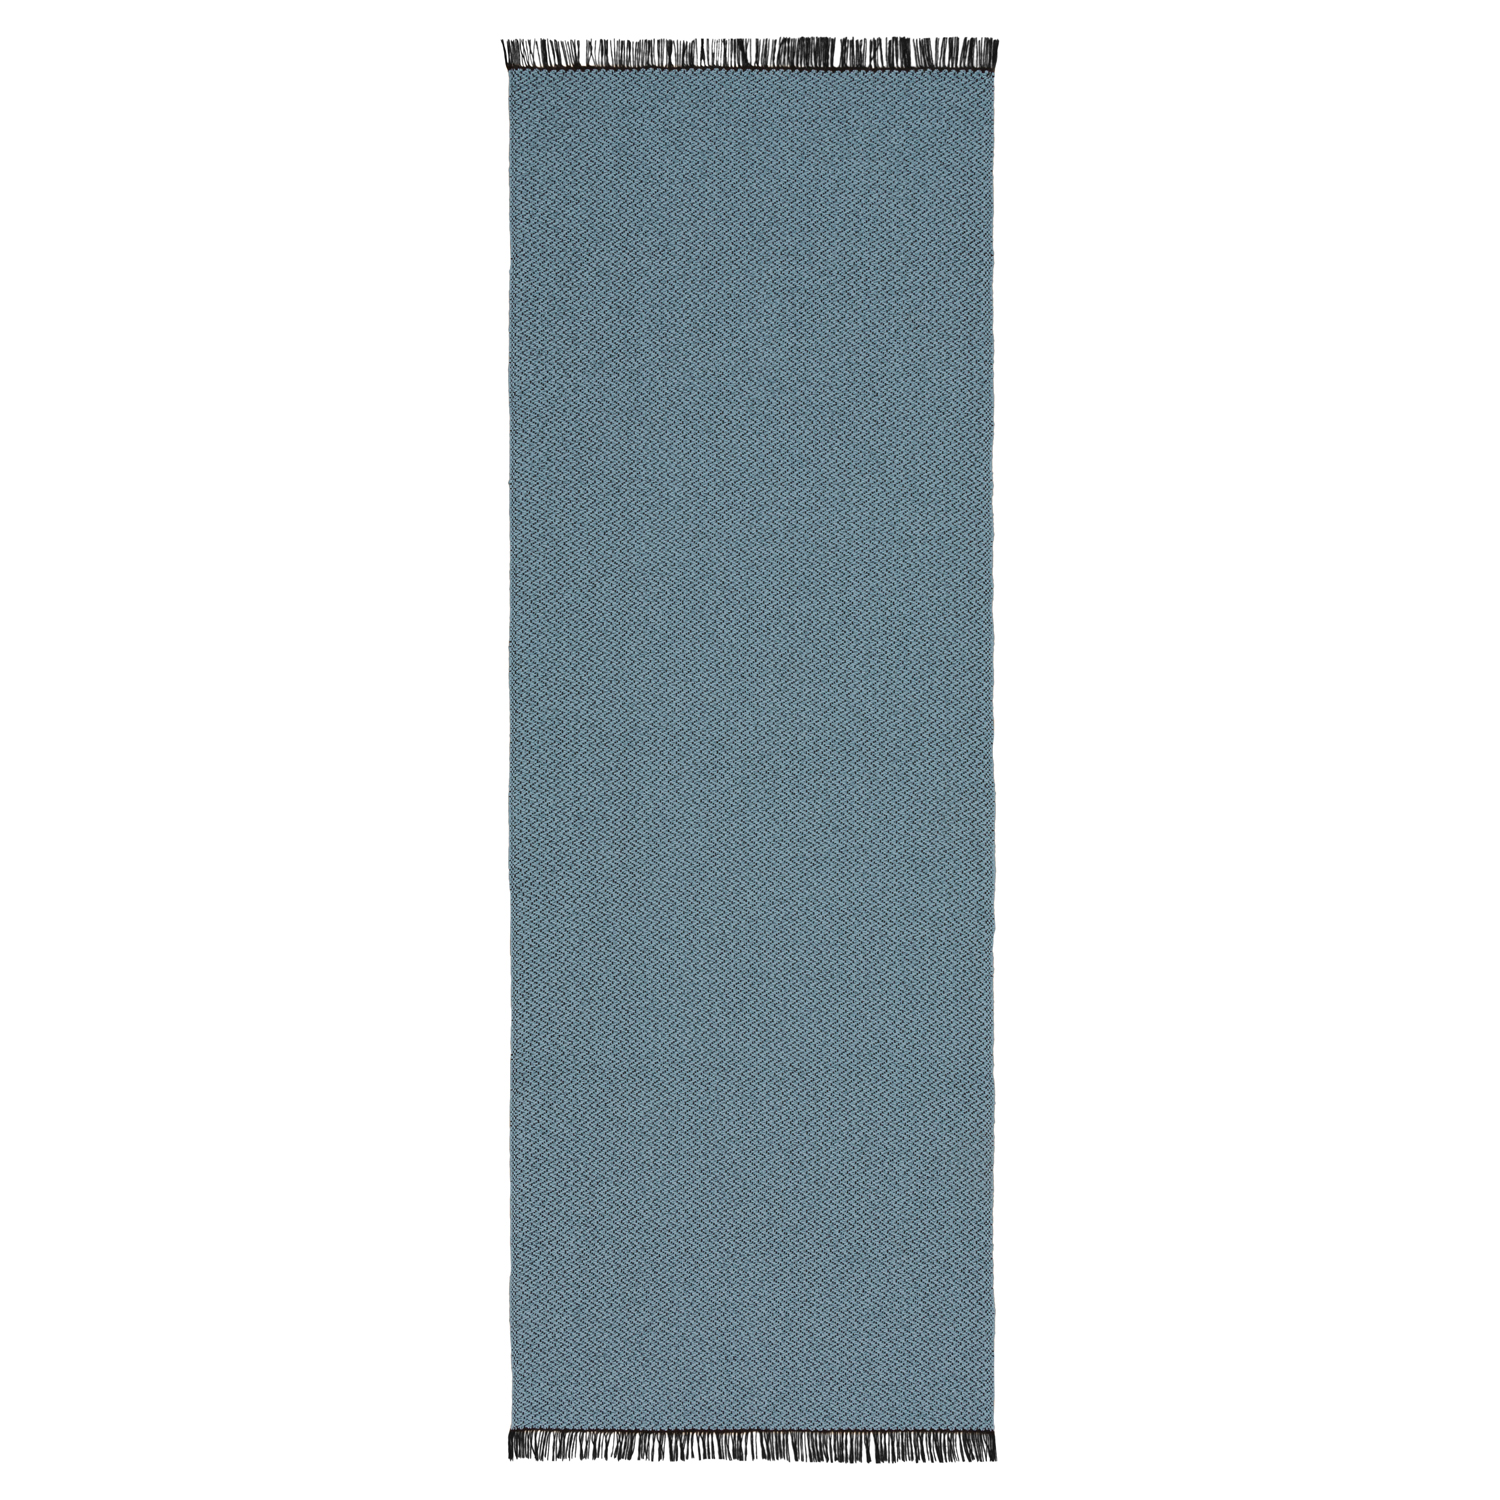 Horredsmattan Teppich Candy Blue für Innen und Aussen Made in Sweden since 1956 UV-Beständig